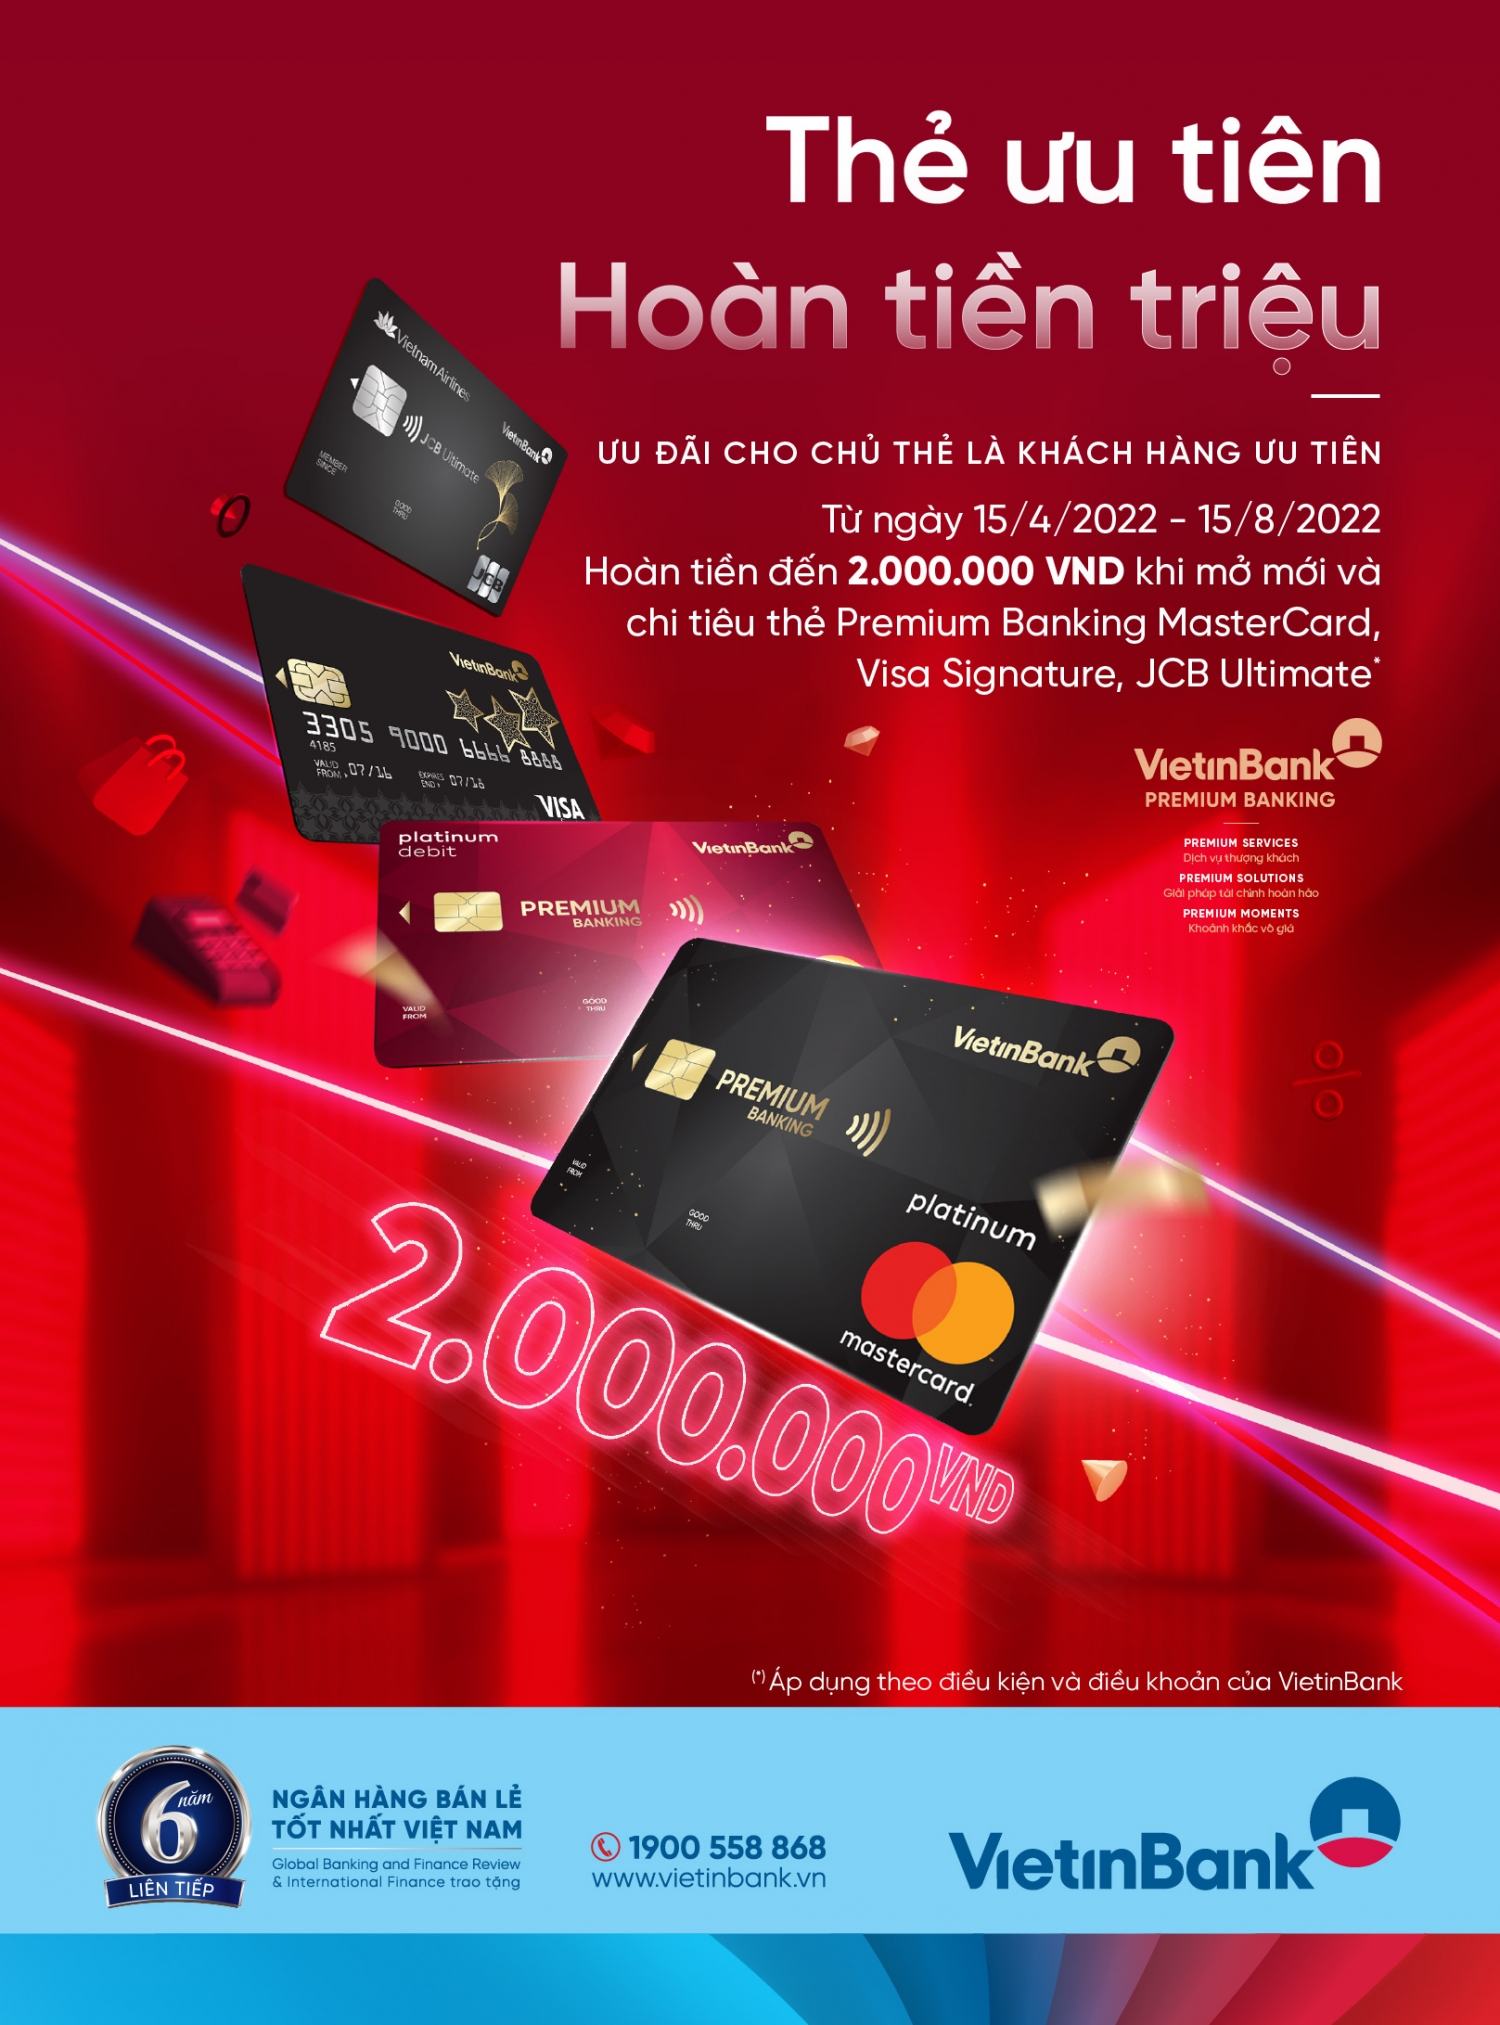 Cùng VietinBank mở thẻ ưu tiên - hoàn tiền lên đến 2.000.000 VND